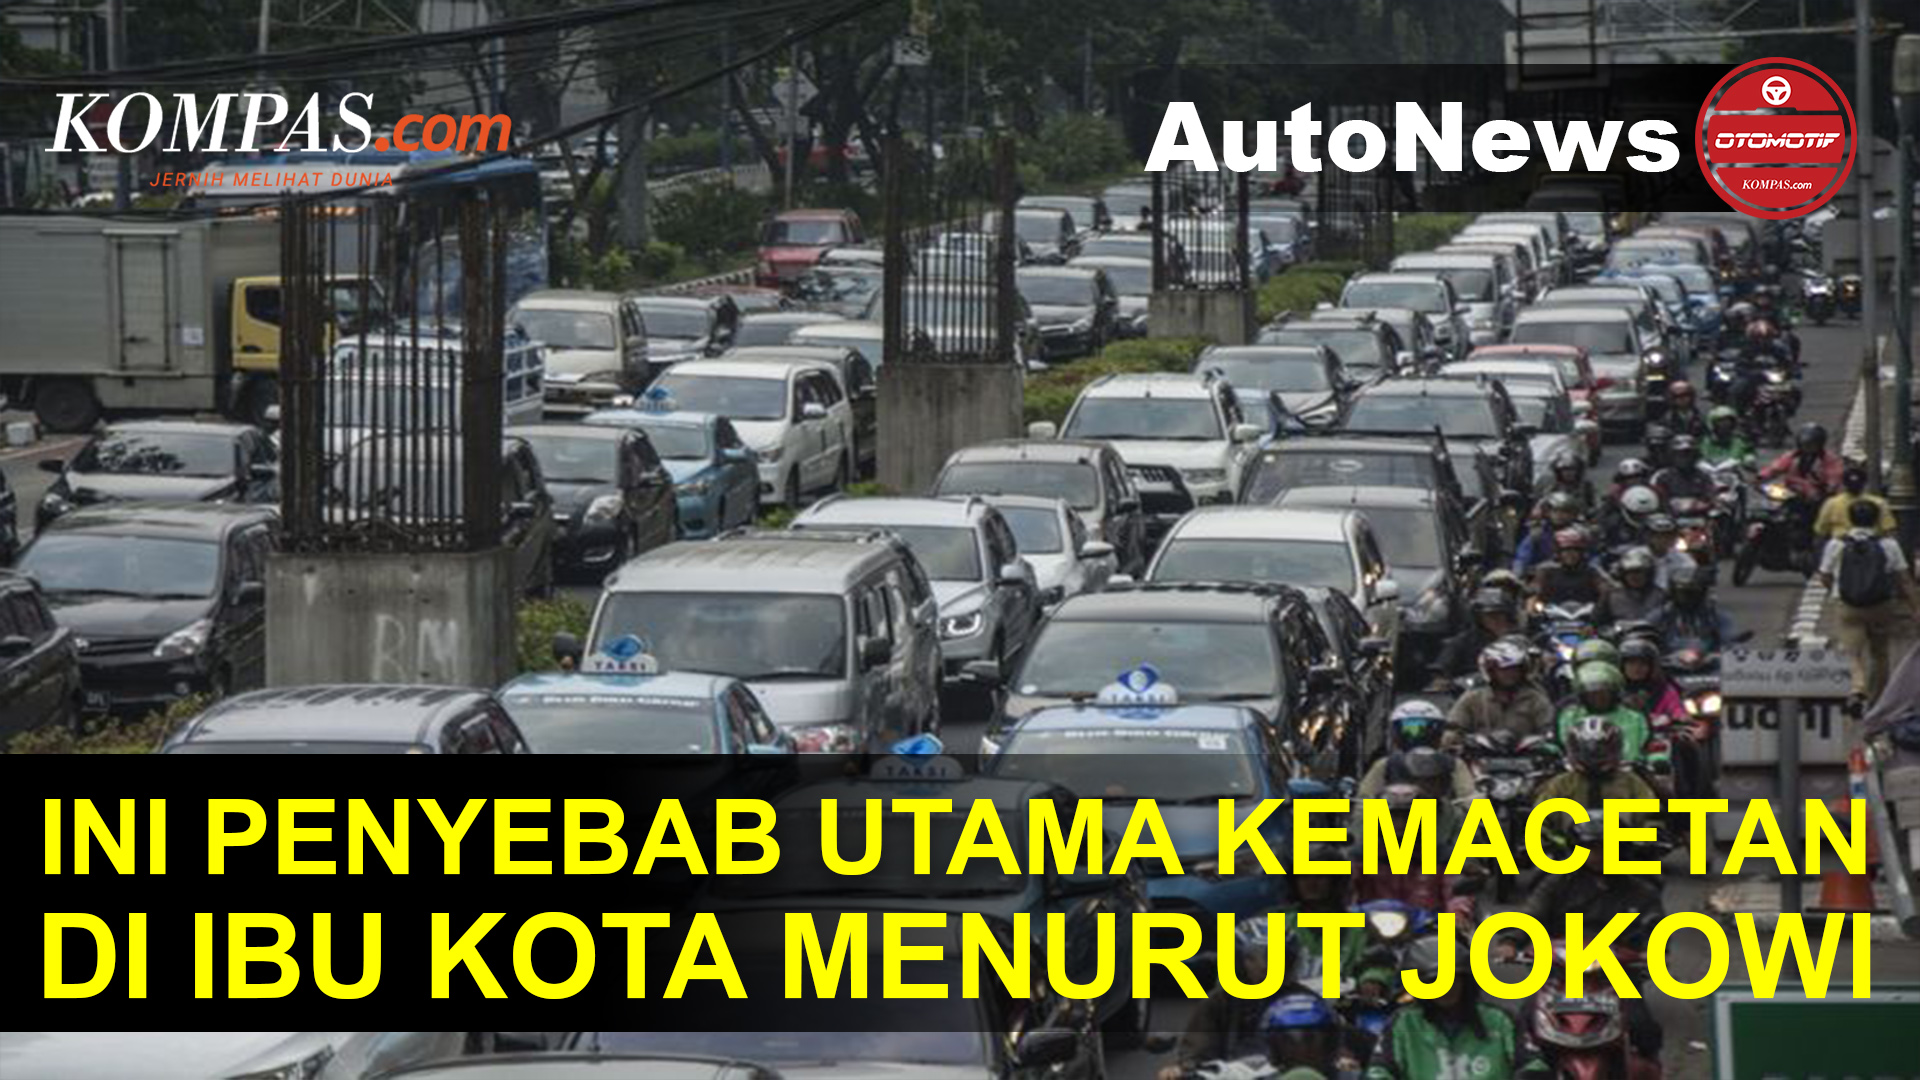 Jokowi Ungkap Penyebab Utama Kemacetan di Ibu Kota